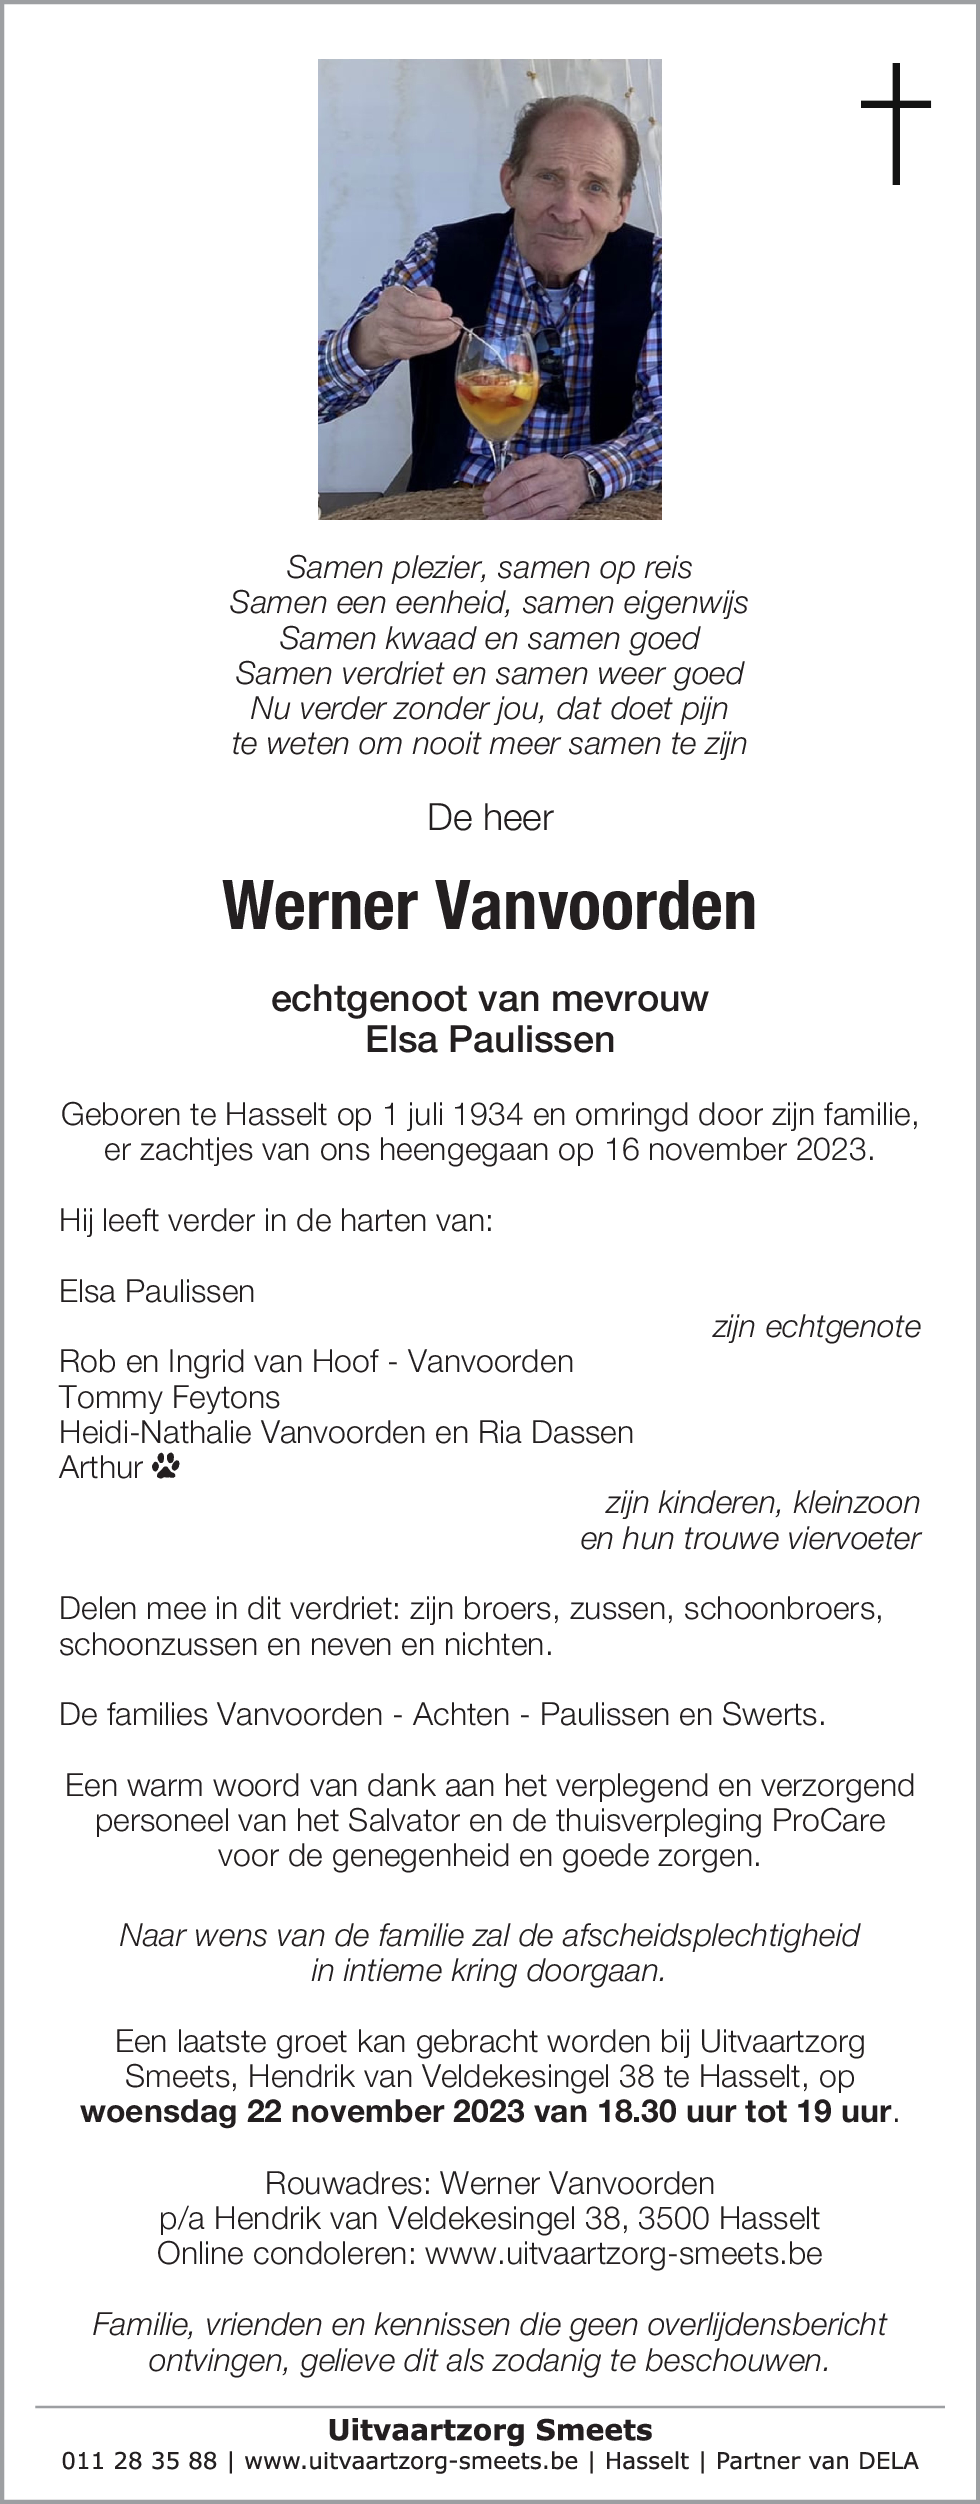 Werner Vanvoorden